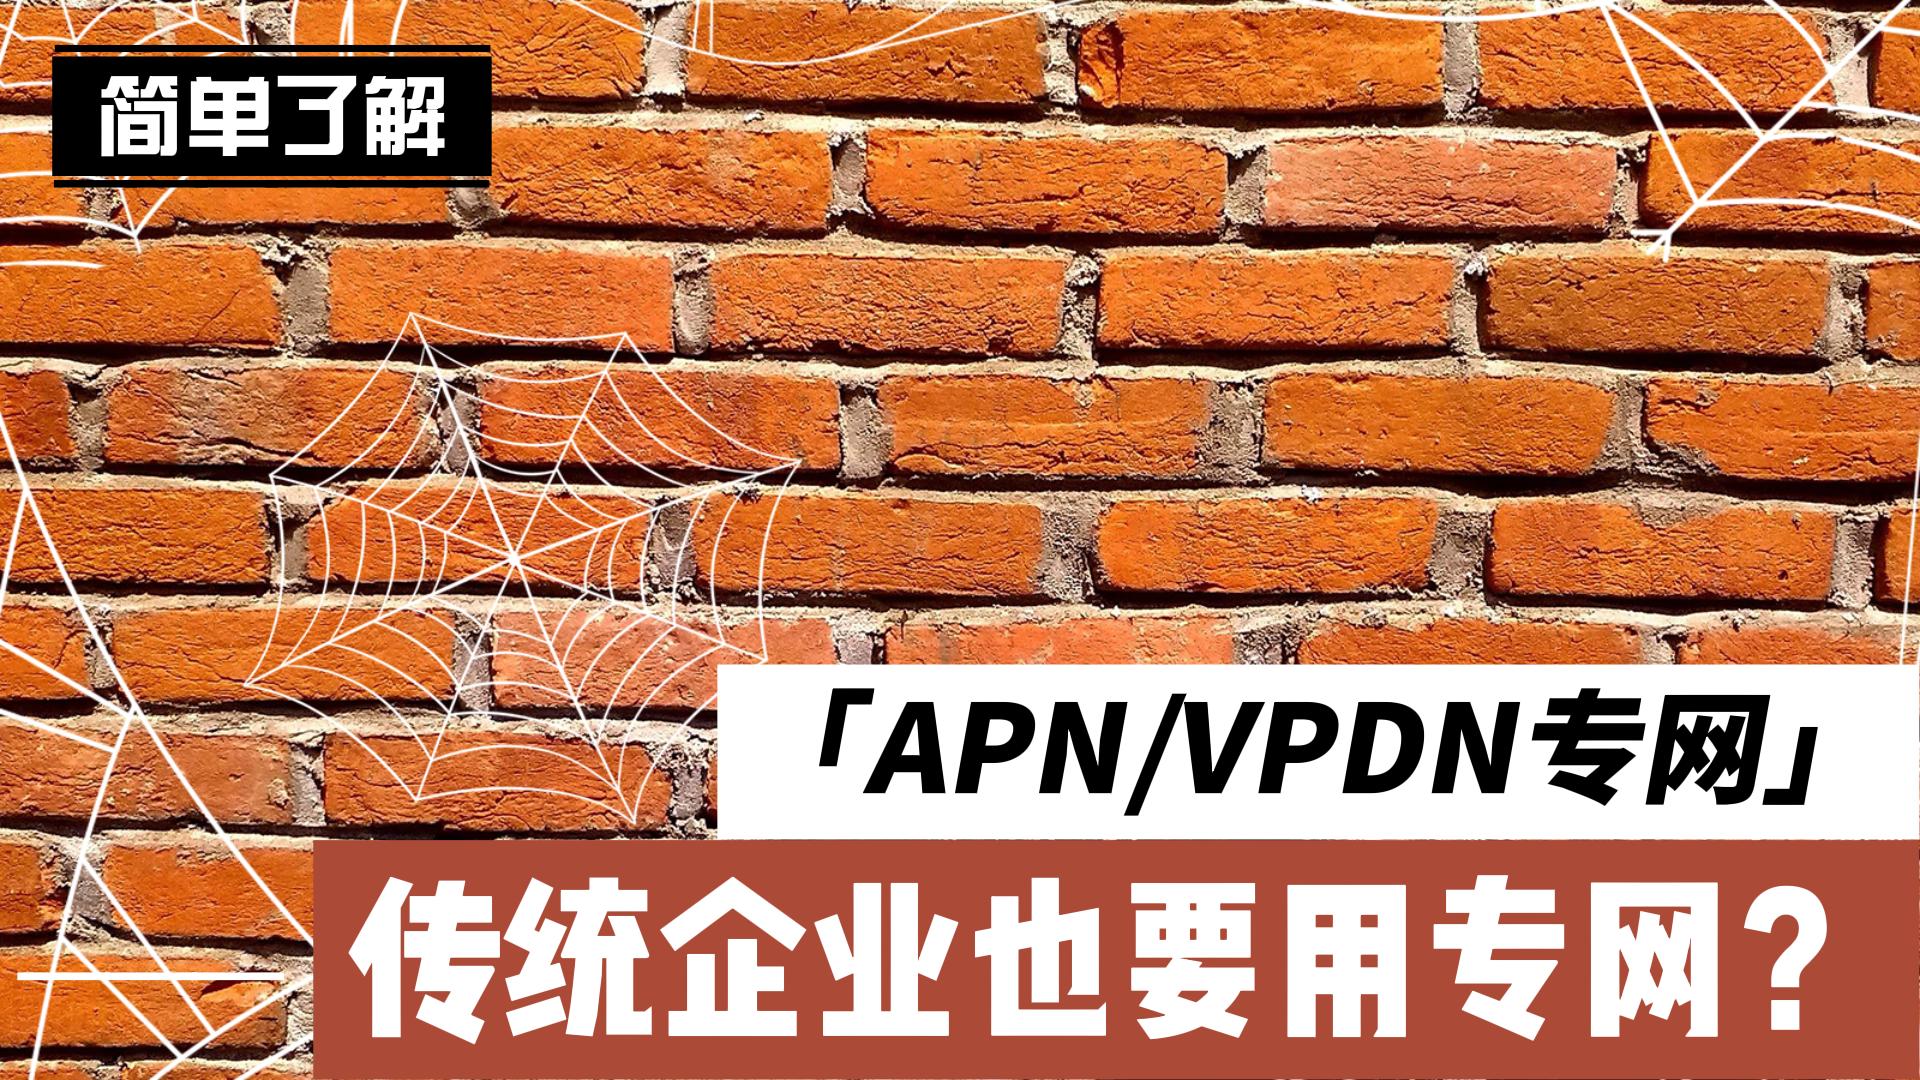 傳統企業也要用專網？帶你簡單了解什么是APN/VPDN專網